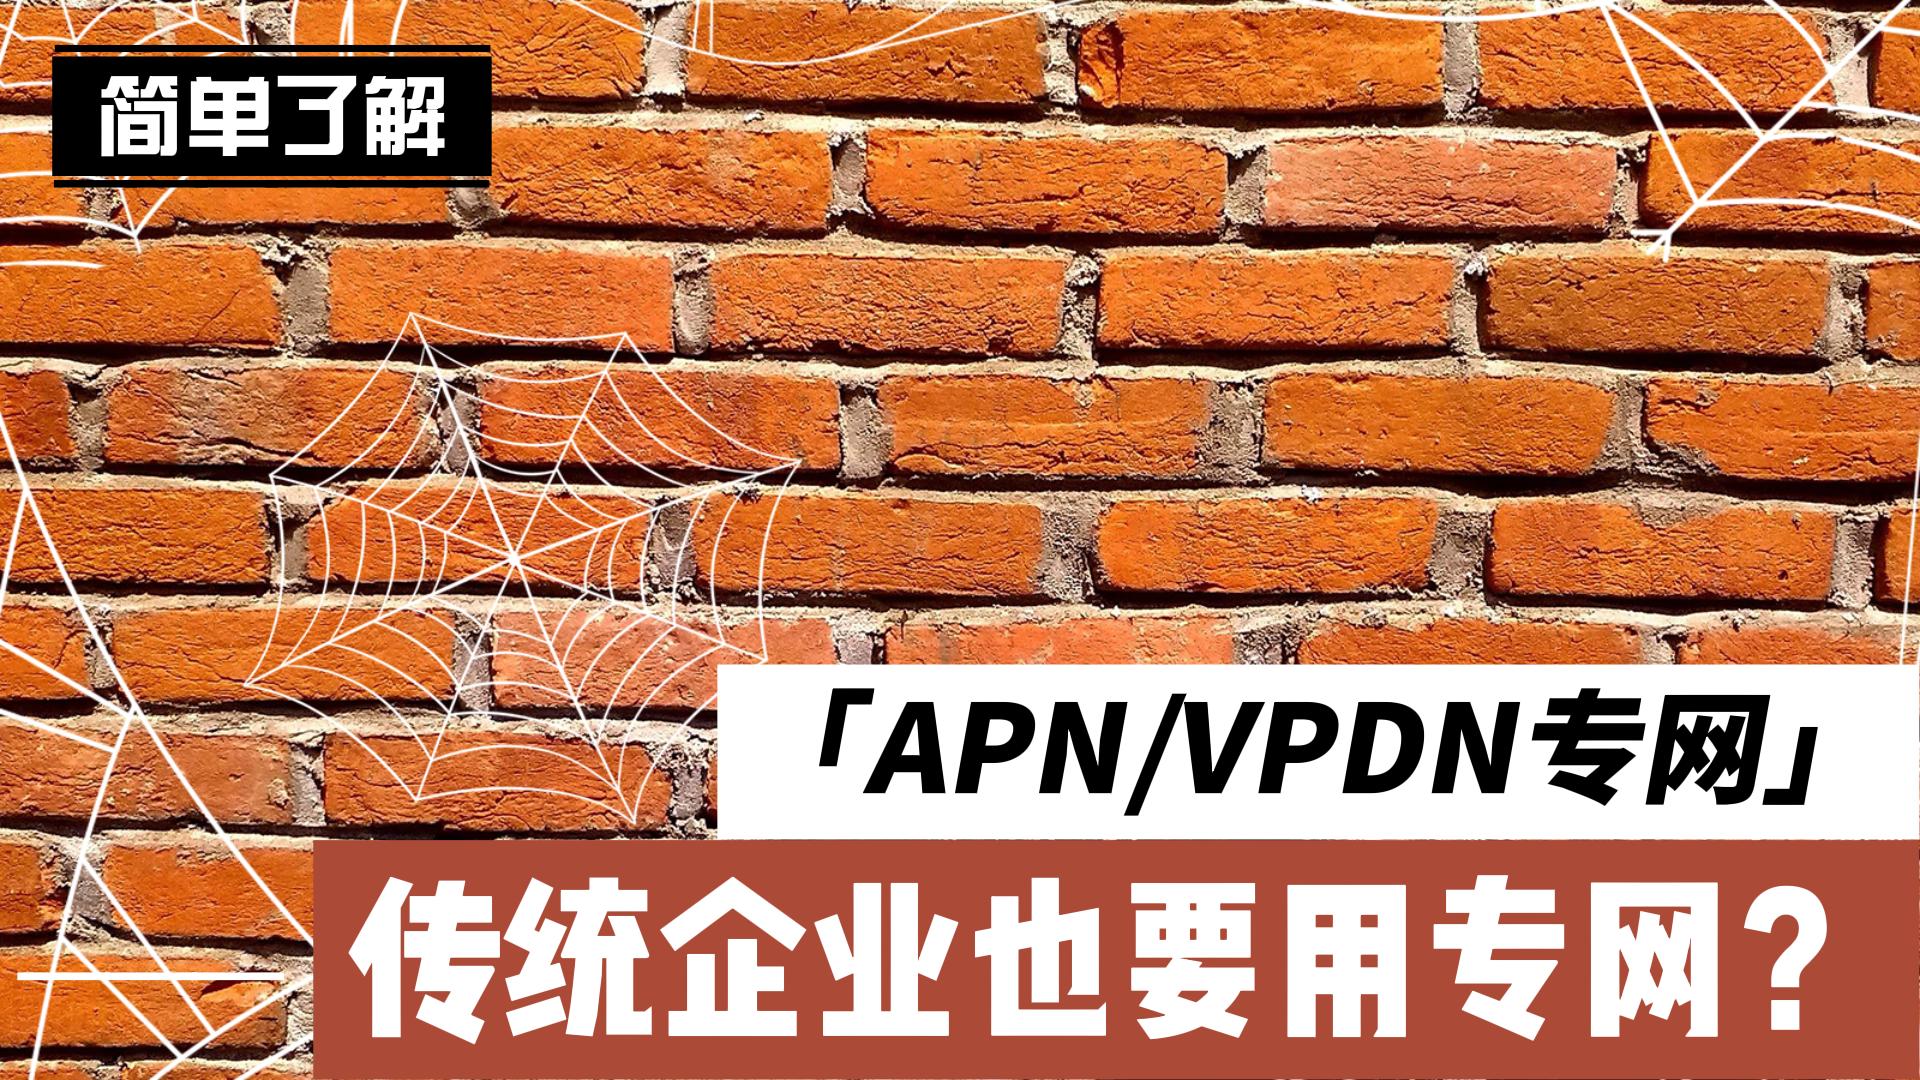 傳統企業也要用專網？帶你簡單了解什么是APN/VPDN專網